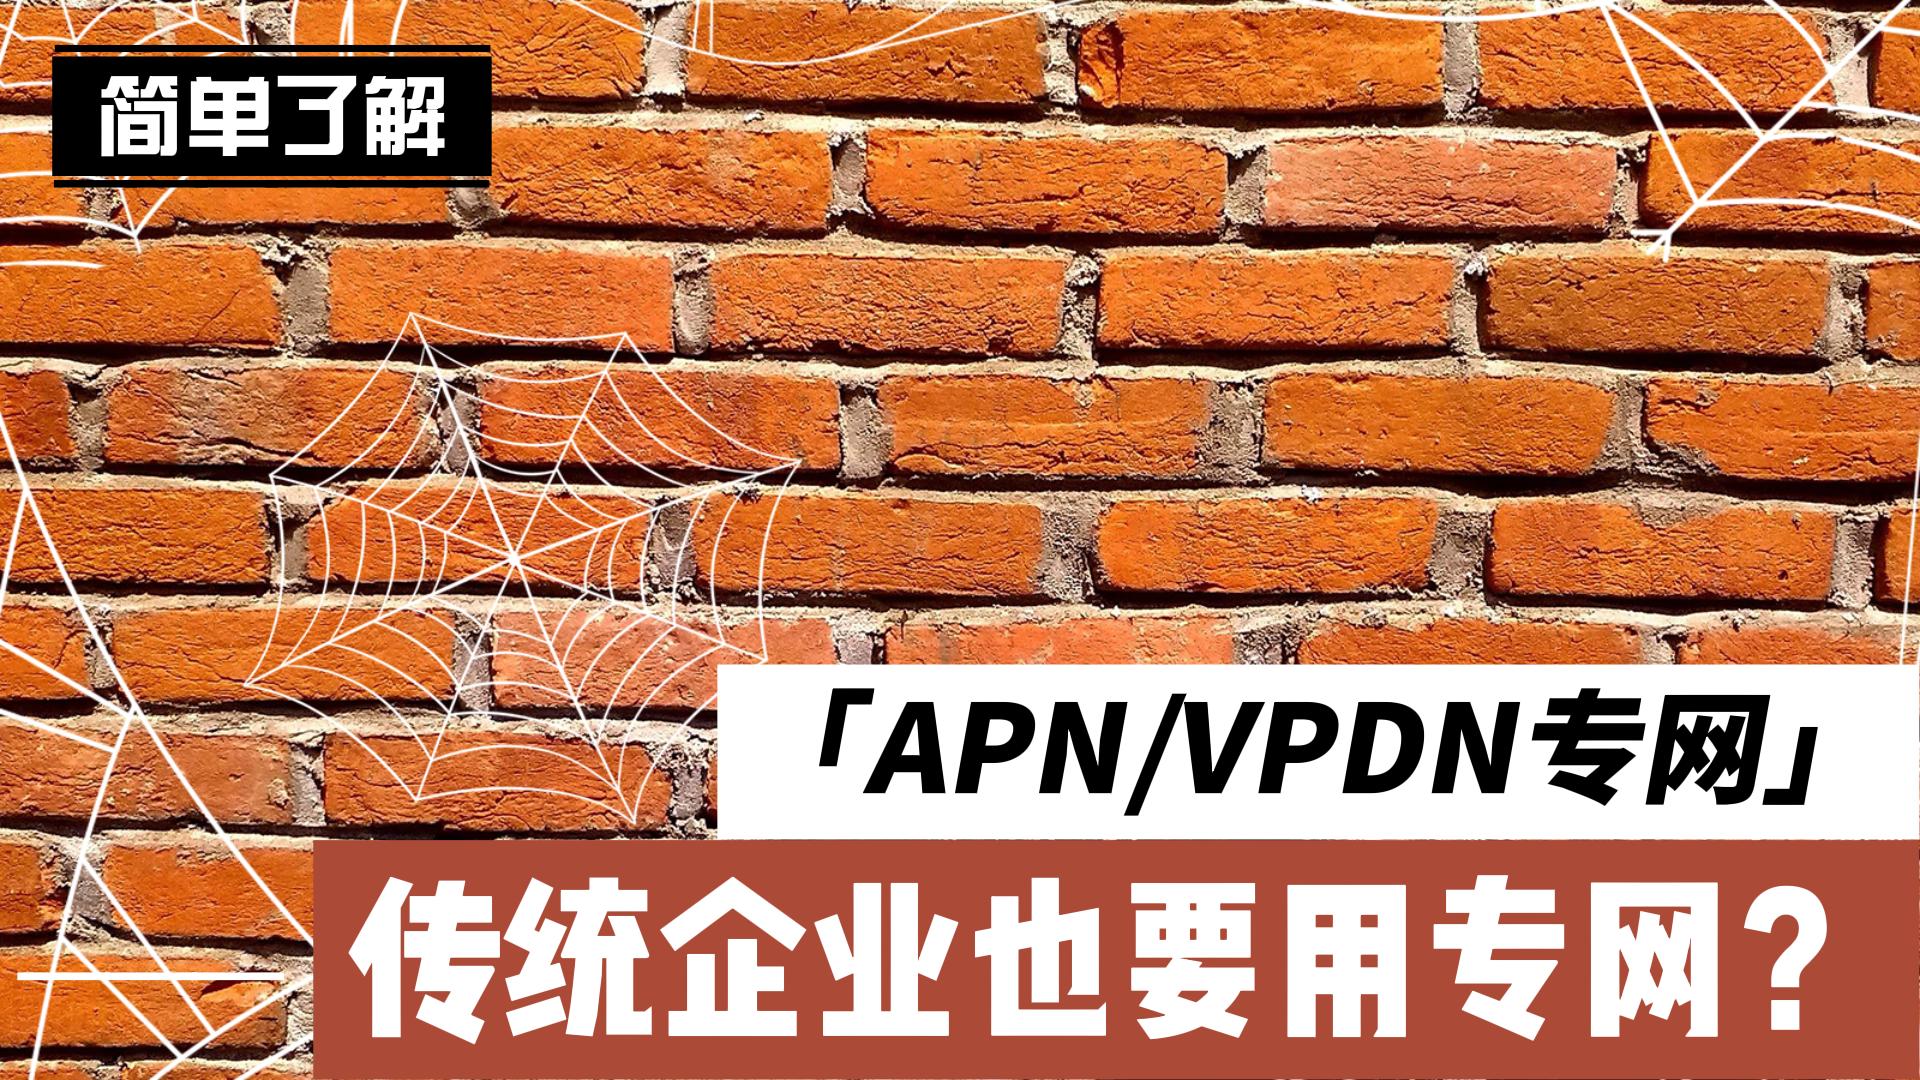 傳統企業也要用專網？帶你簡單了解什么是APN/VPDN專網